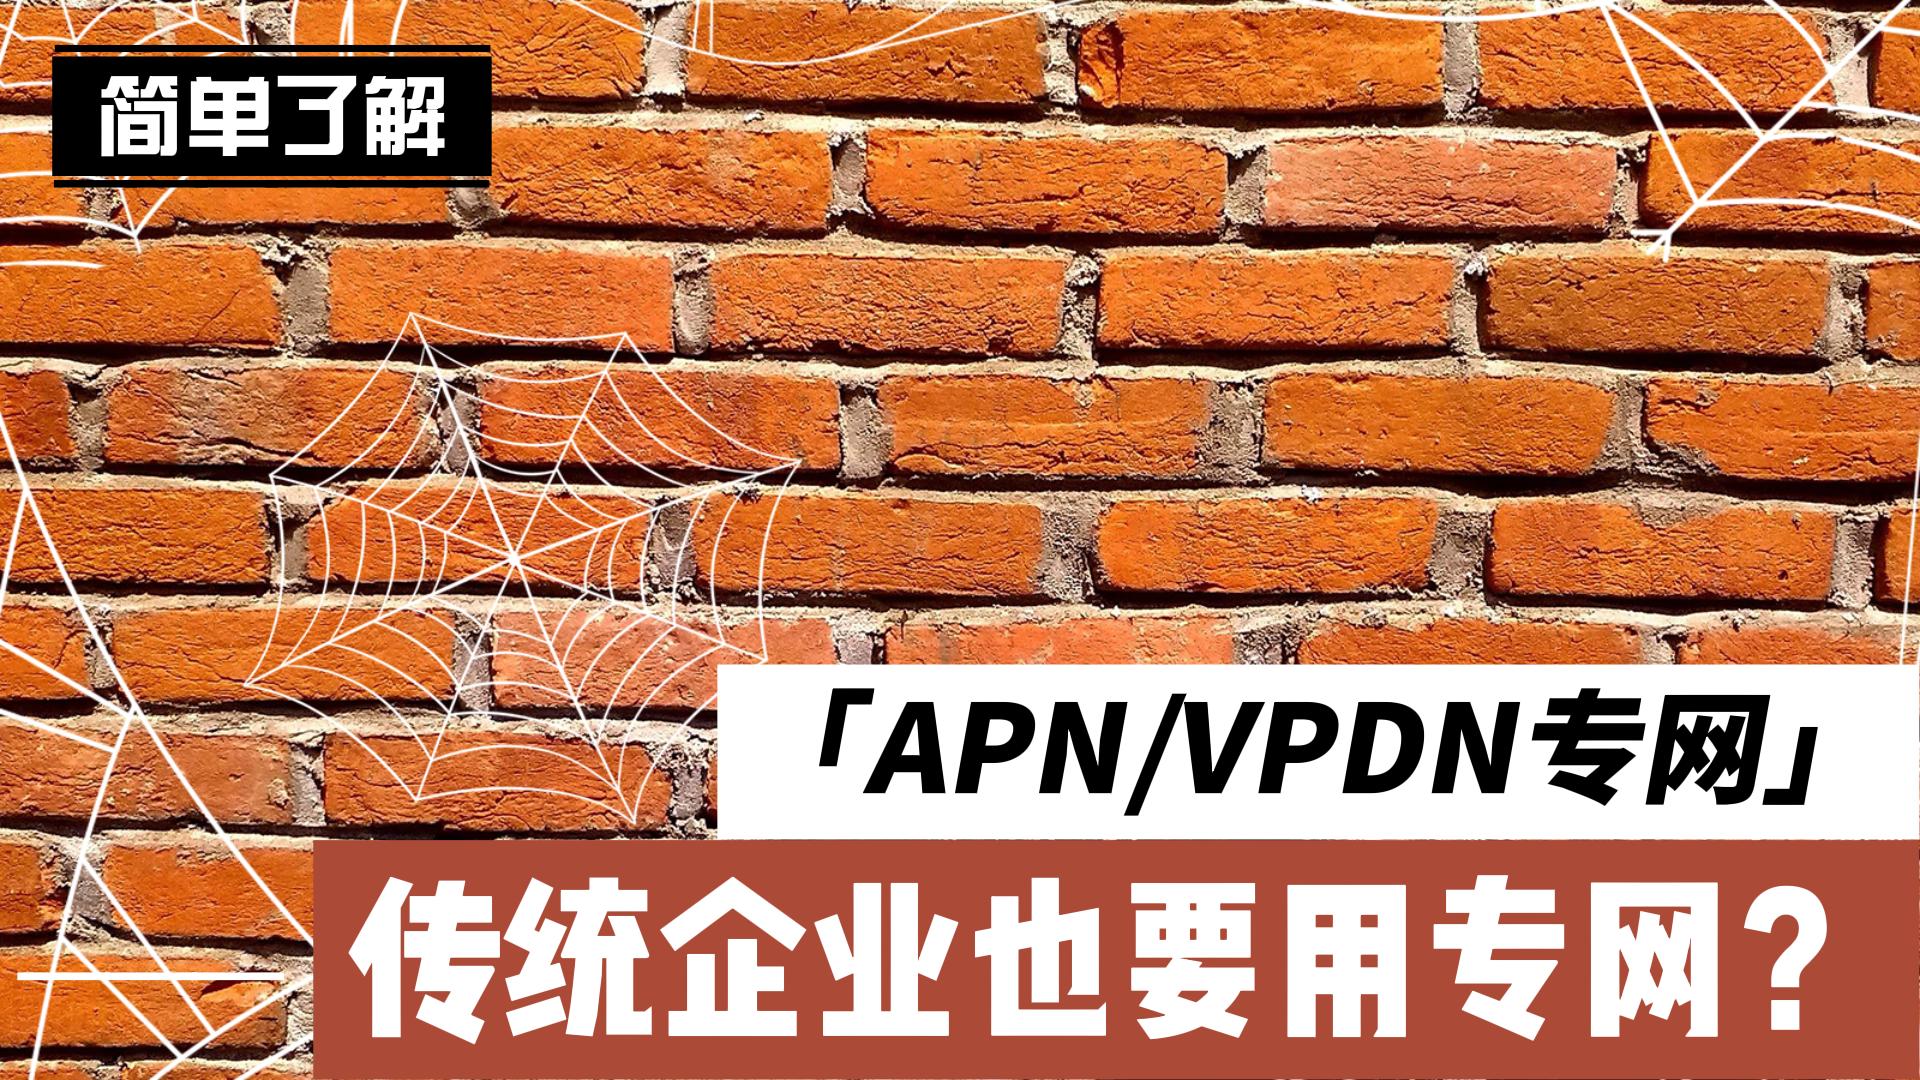 傳統企業也要用專網？帶你簡單了解什么是APN/VPDN專網